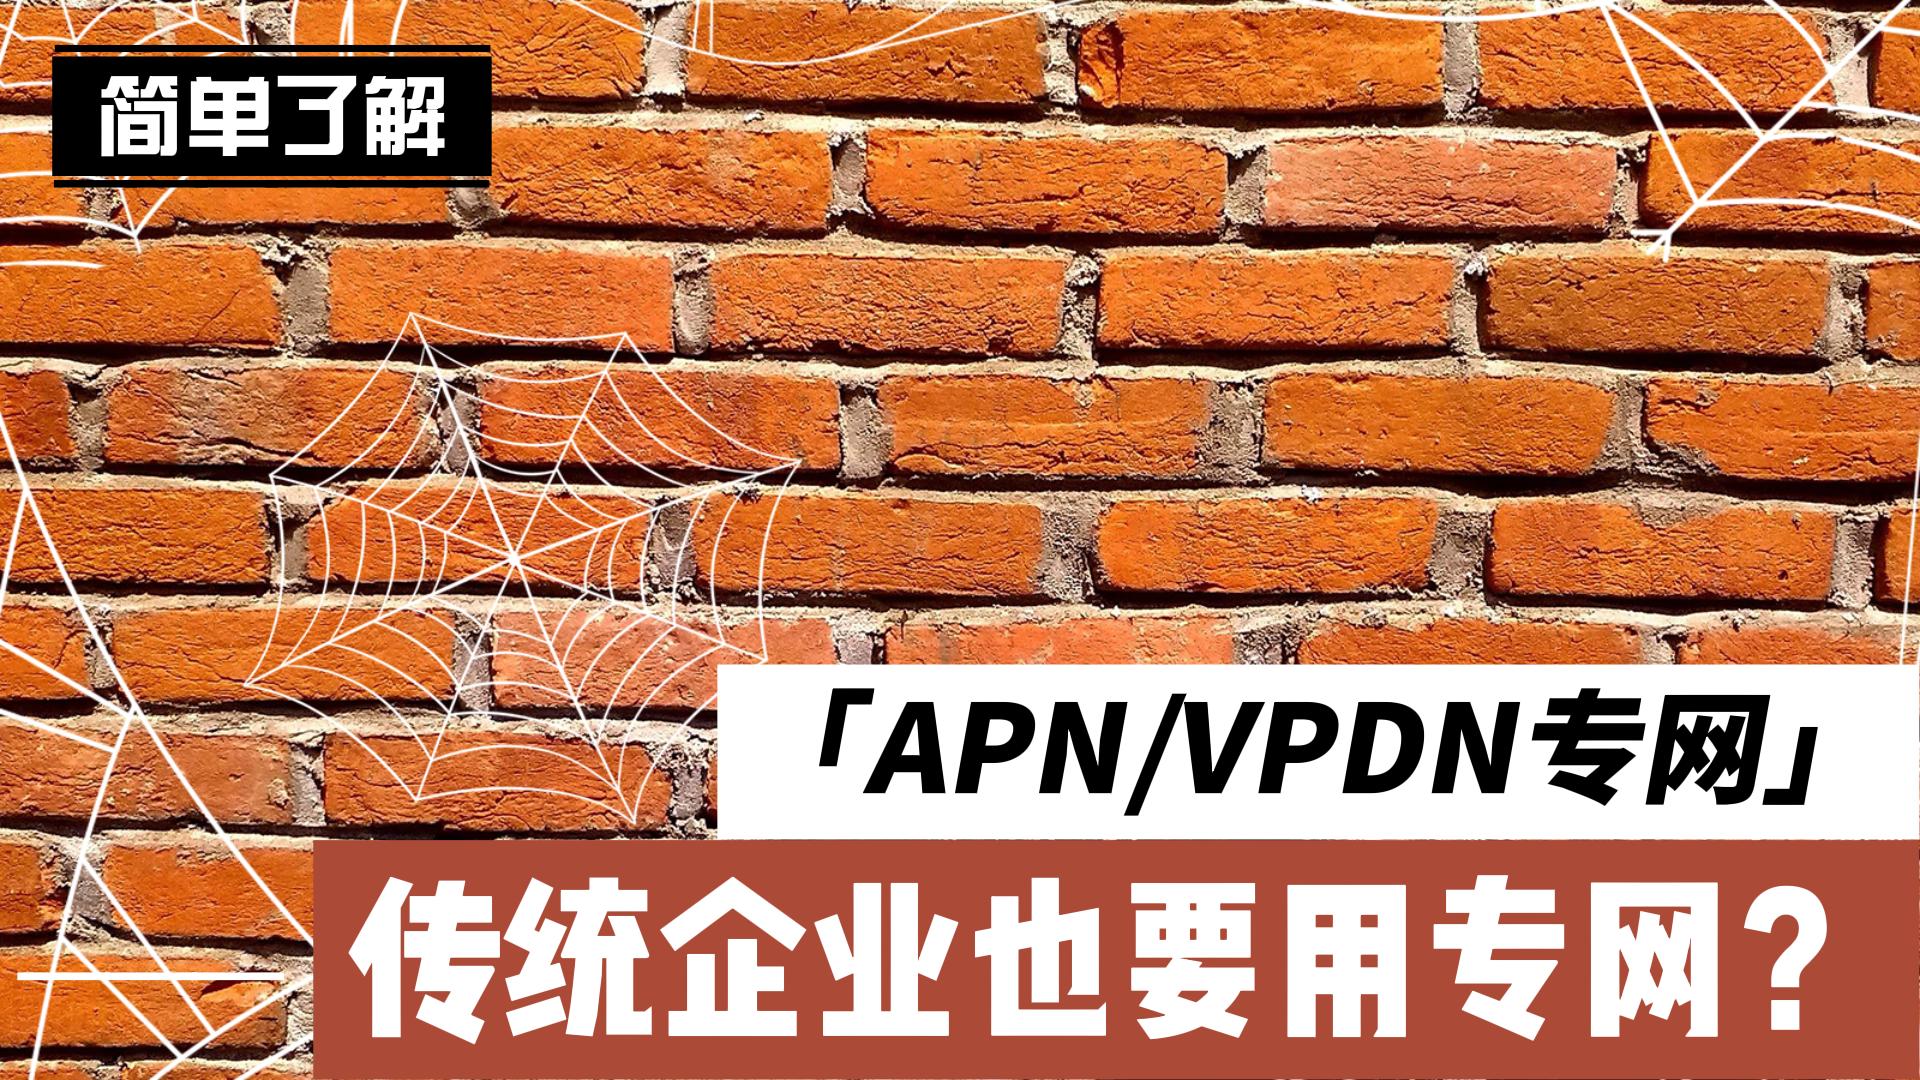 傳統企業也要用專網？帶你簡單了解什么是APN/VPDN專網